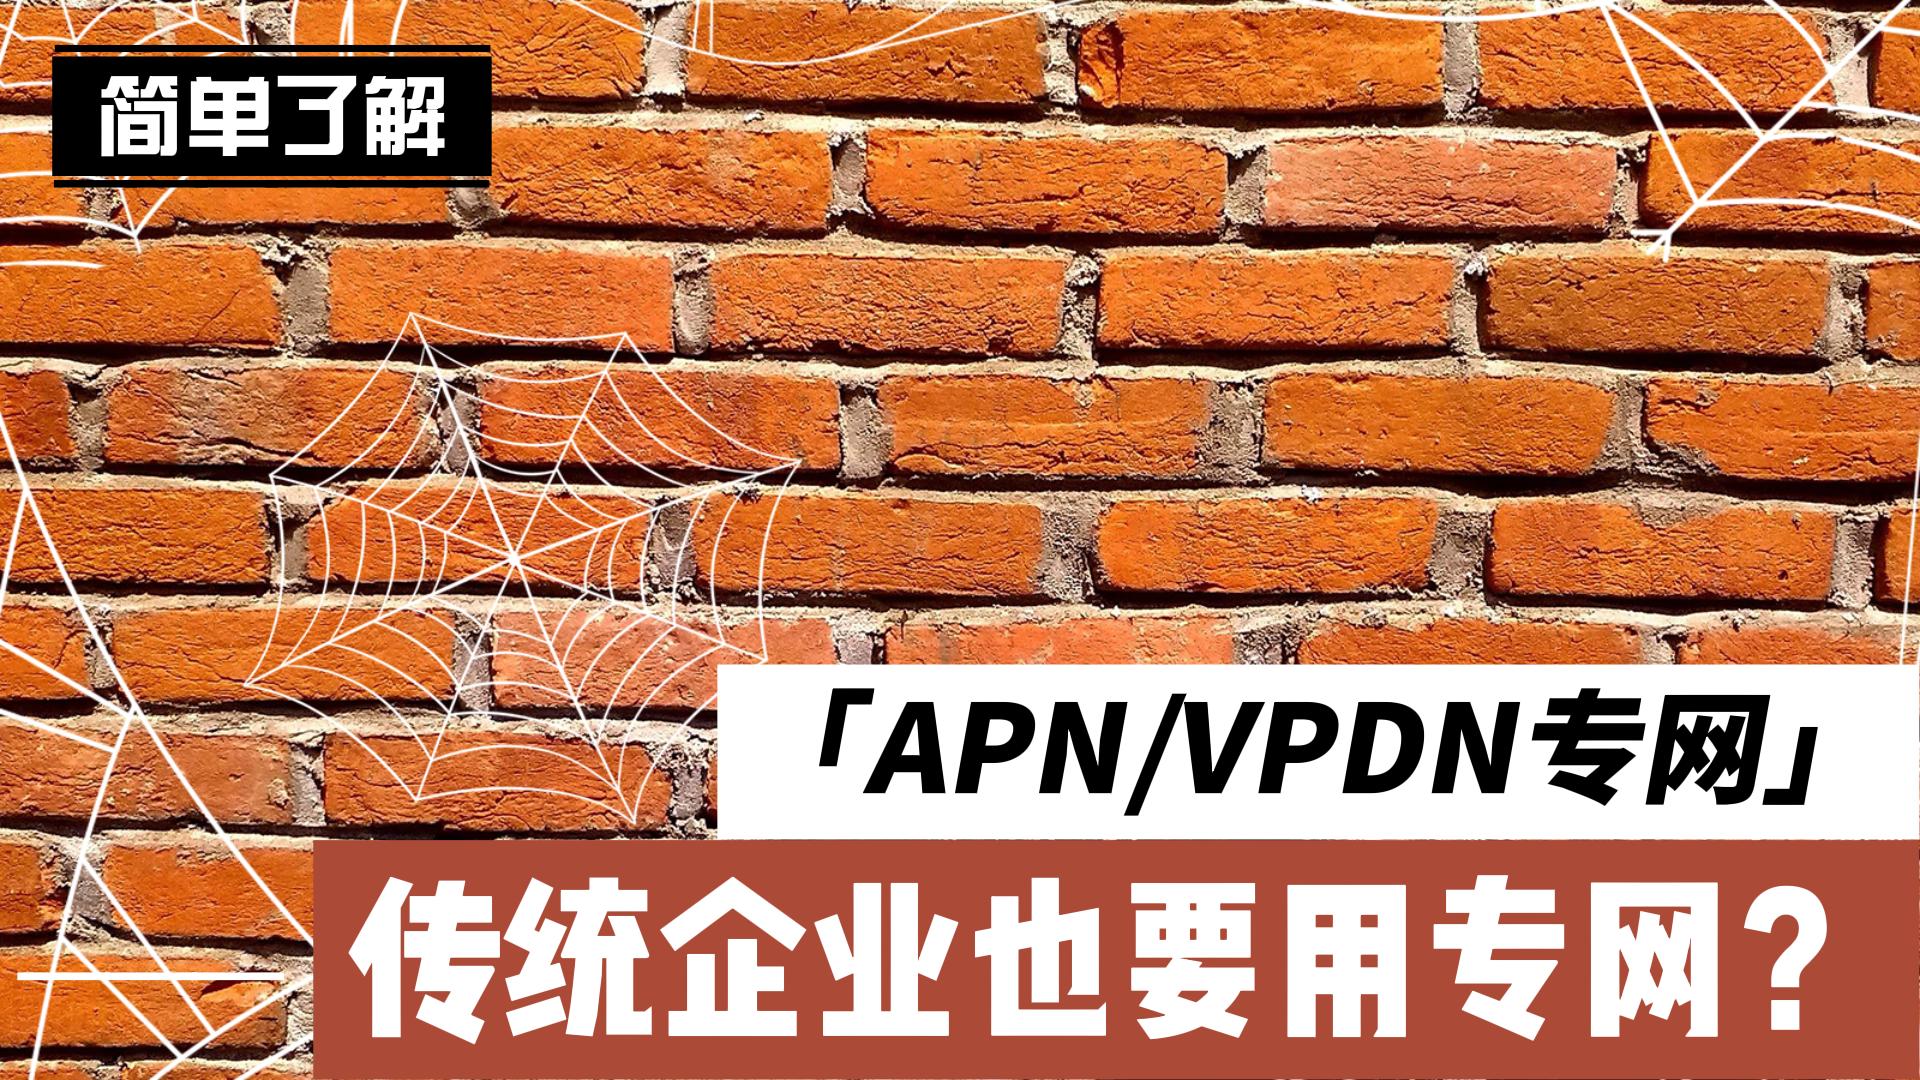 傳統企業也要用專網？帶你簡單了解什么是APN/VPDN專網